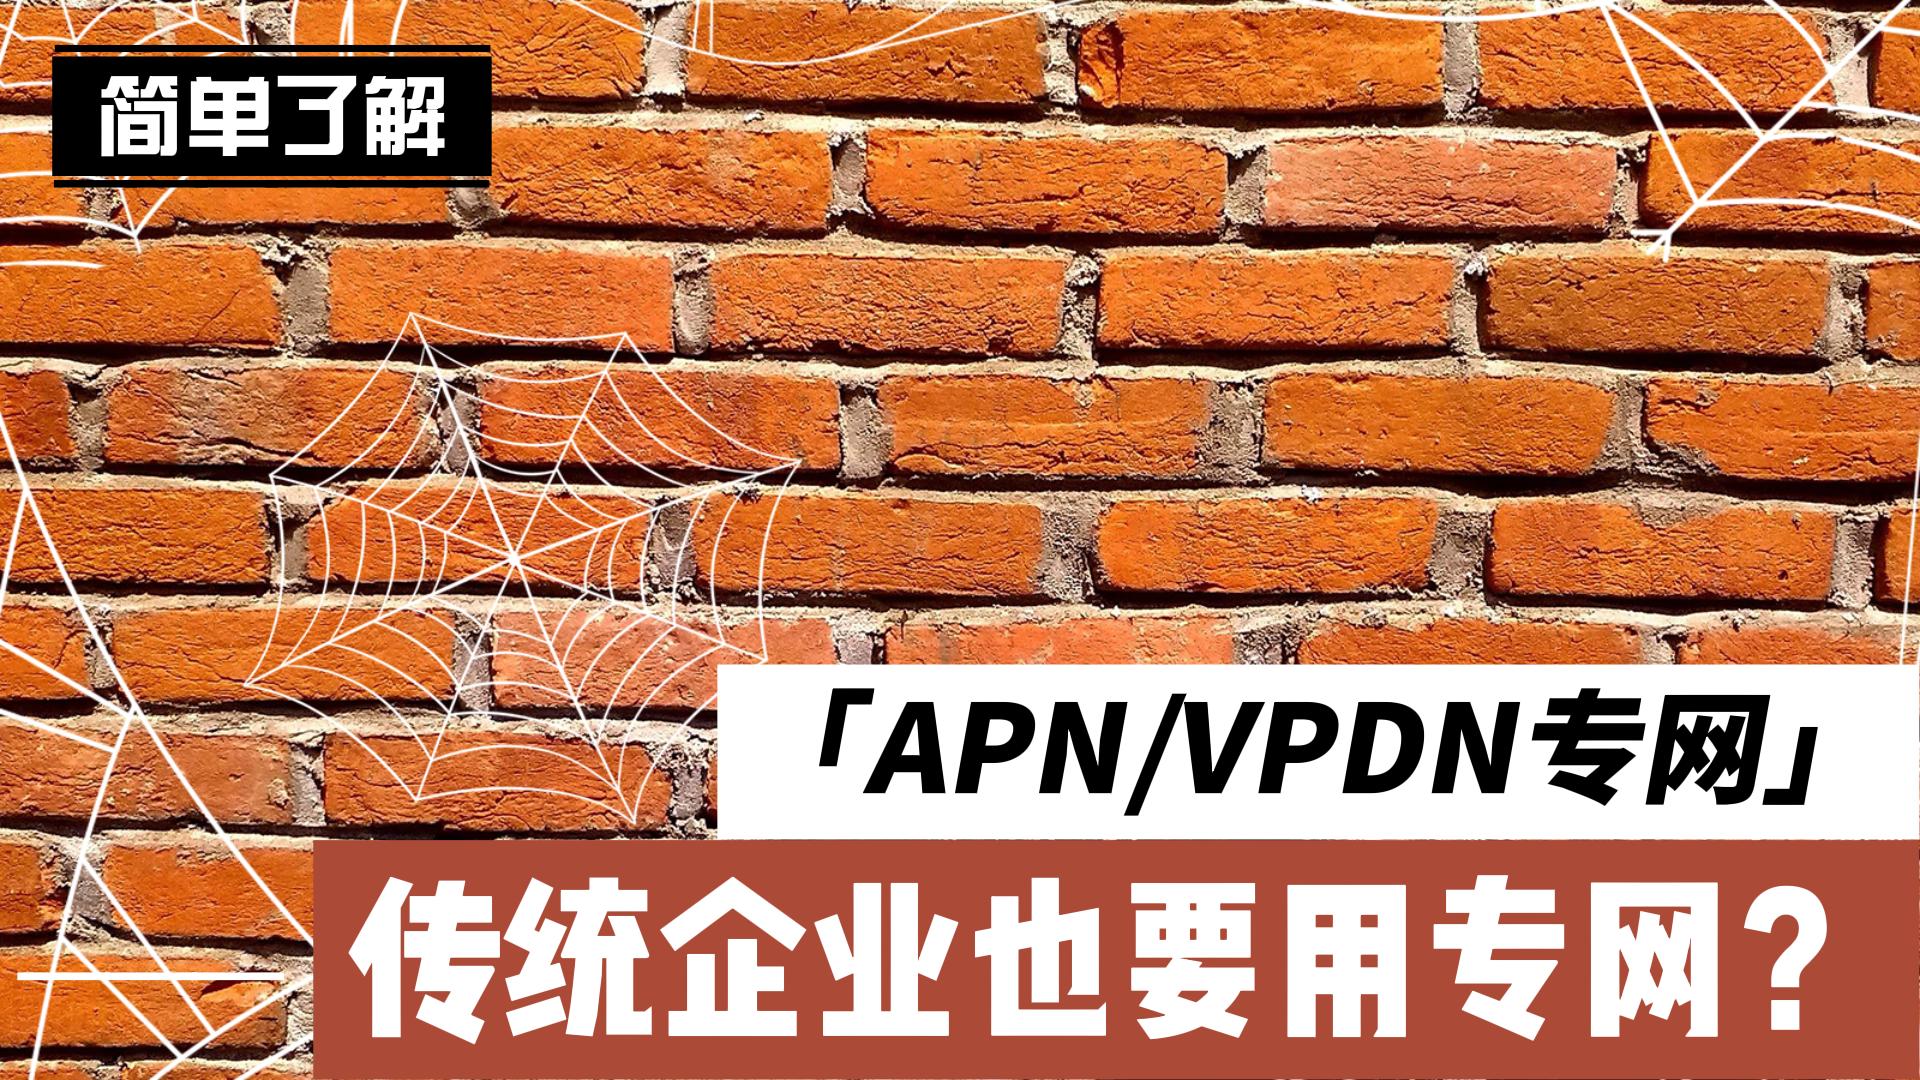 傳統企業也要用專網？帶你簡單了解什么是APN/VPDN專網